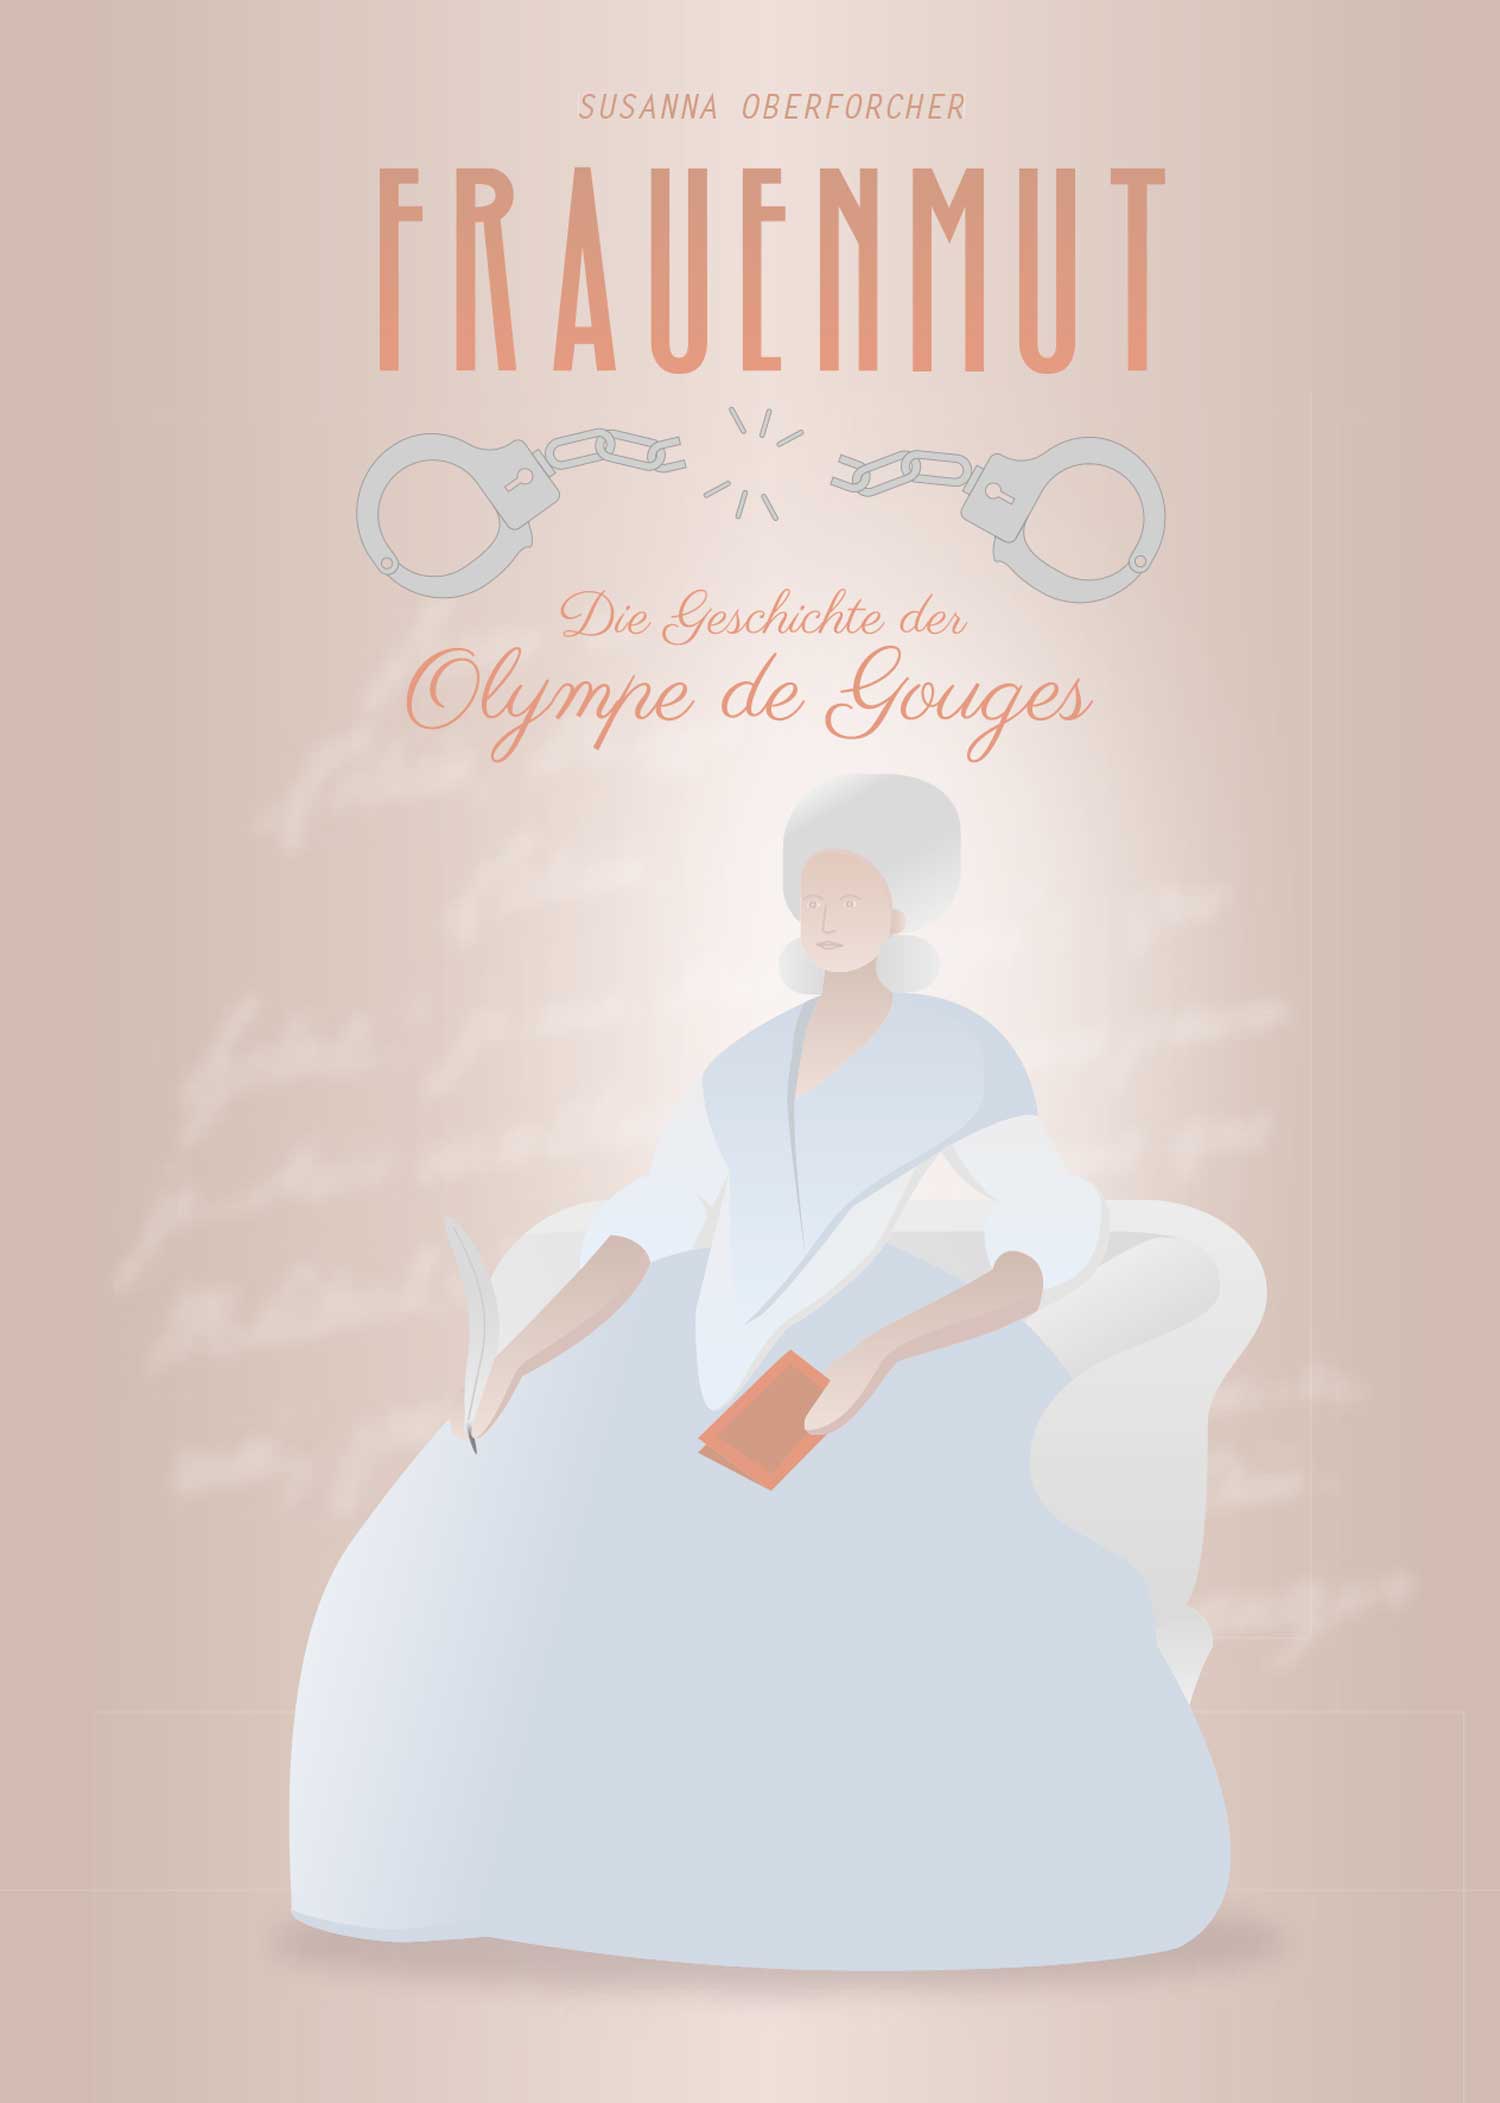 Cover Design - Frauenmut - Die Geschichte der Olympe de Gouges